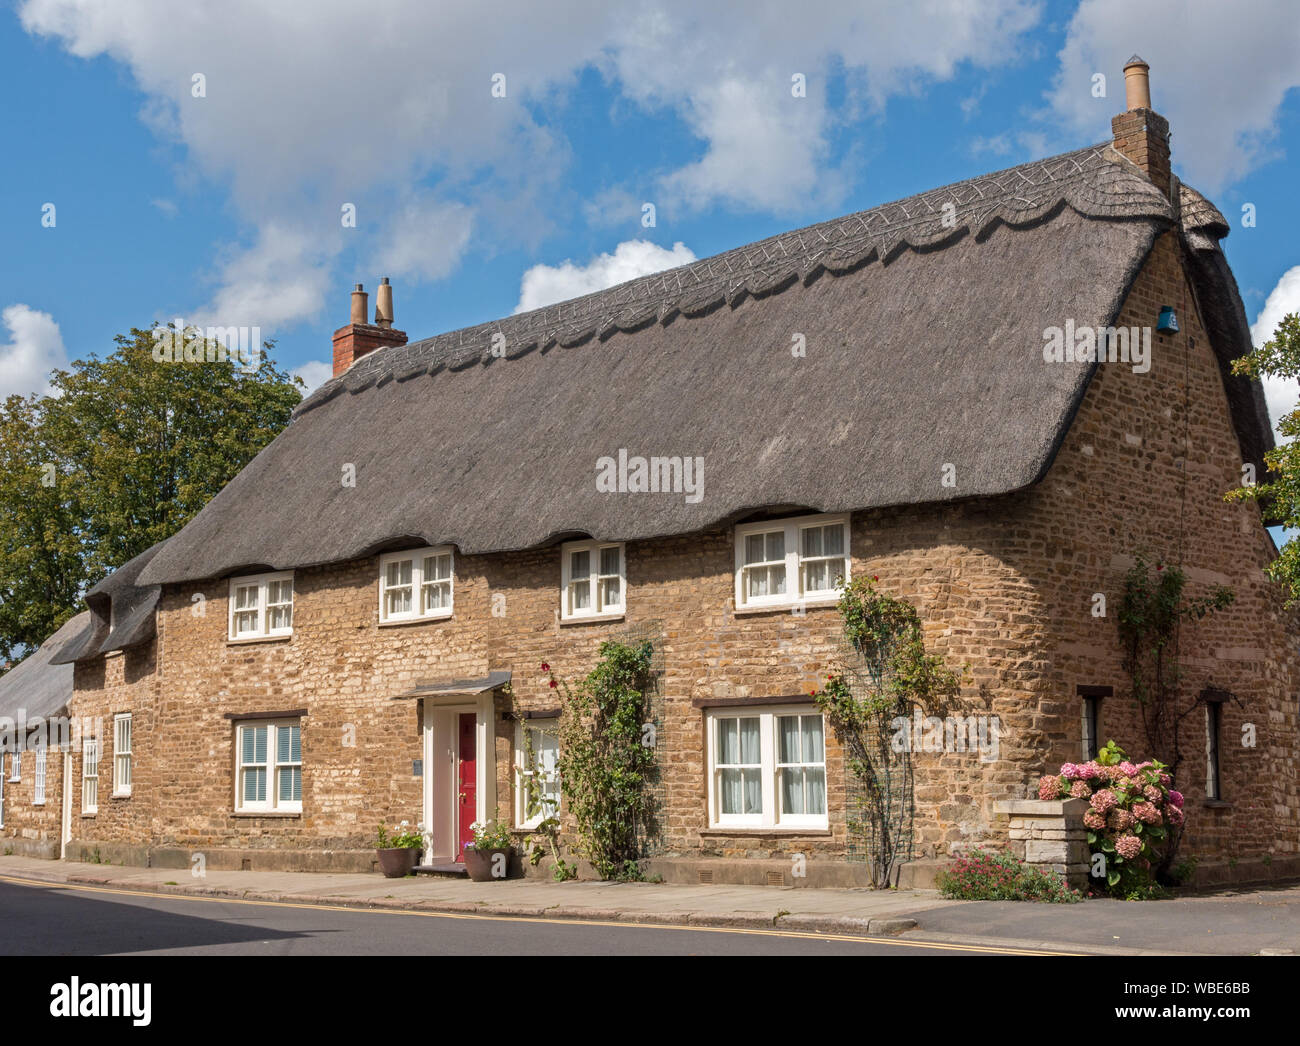 The Old Manor House English thatched stone cottage, Northgate Street, Oakham, Rutland, England, UK Stock Photo